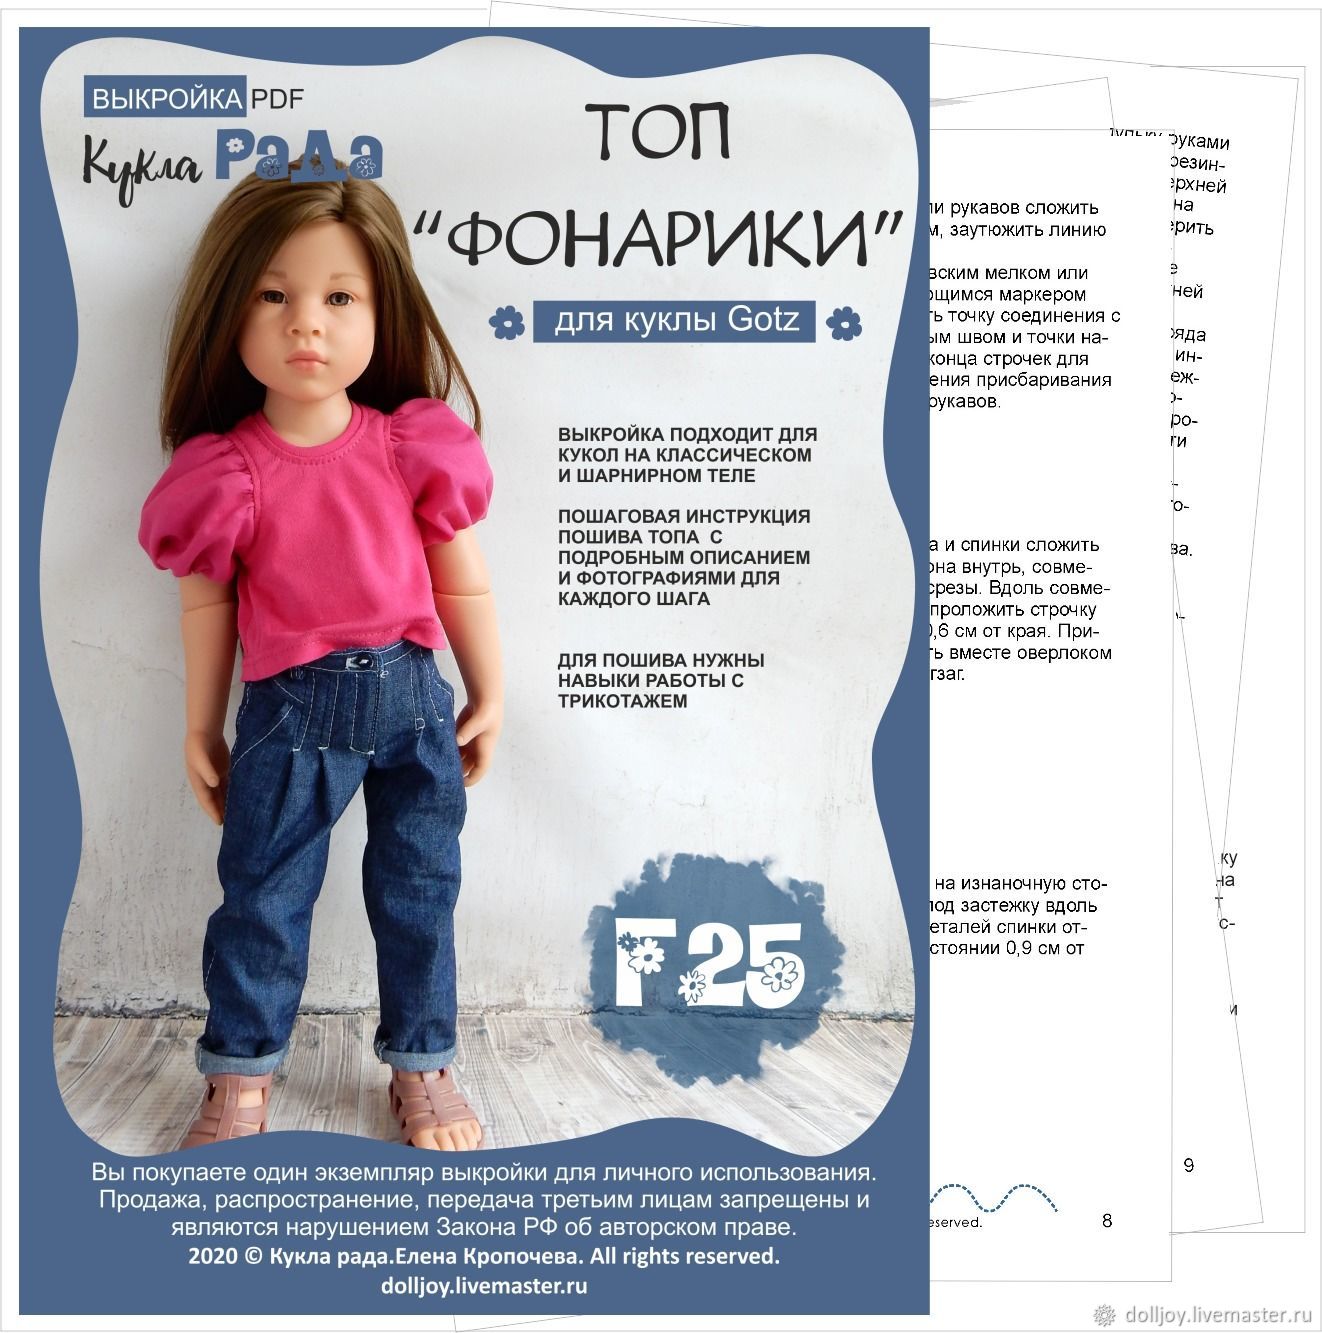 Выкройка и инструкция по пошиву платья для куклы Gotz 45-50 см